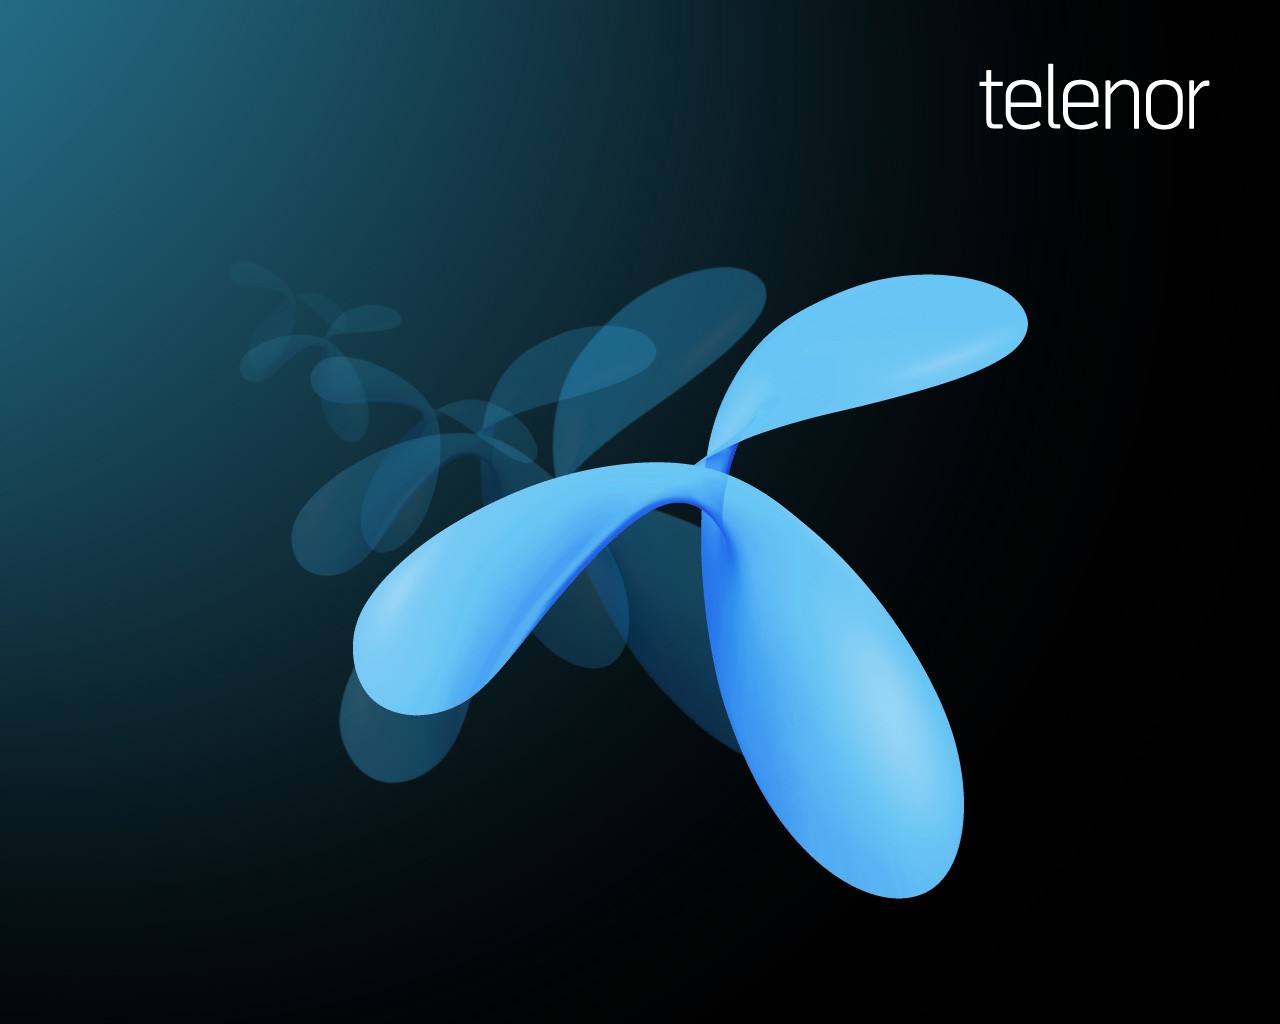 Tv-előfizetőinek megduplázódását várja a Telenor két-három év alatt